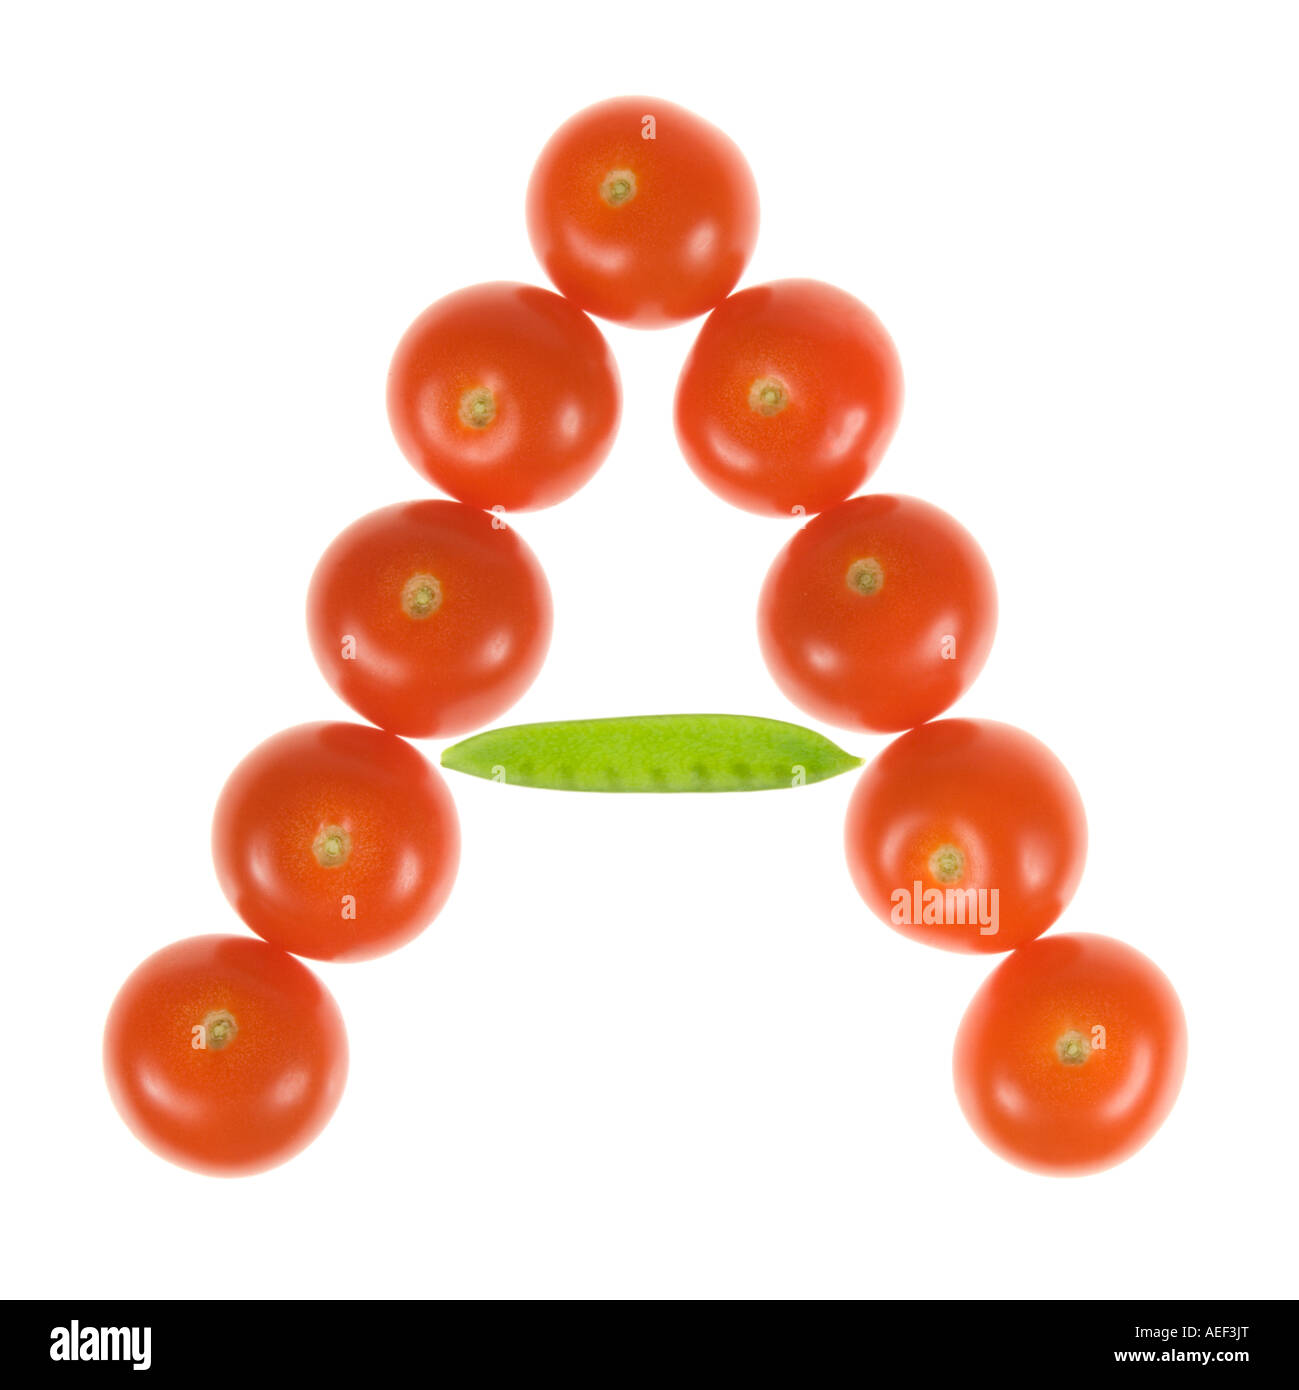 La lettera A su di un bianco puro sfondo utilizzando i pomodori e a gestire tout pod. Foto Stock